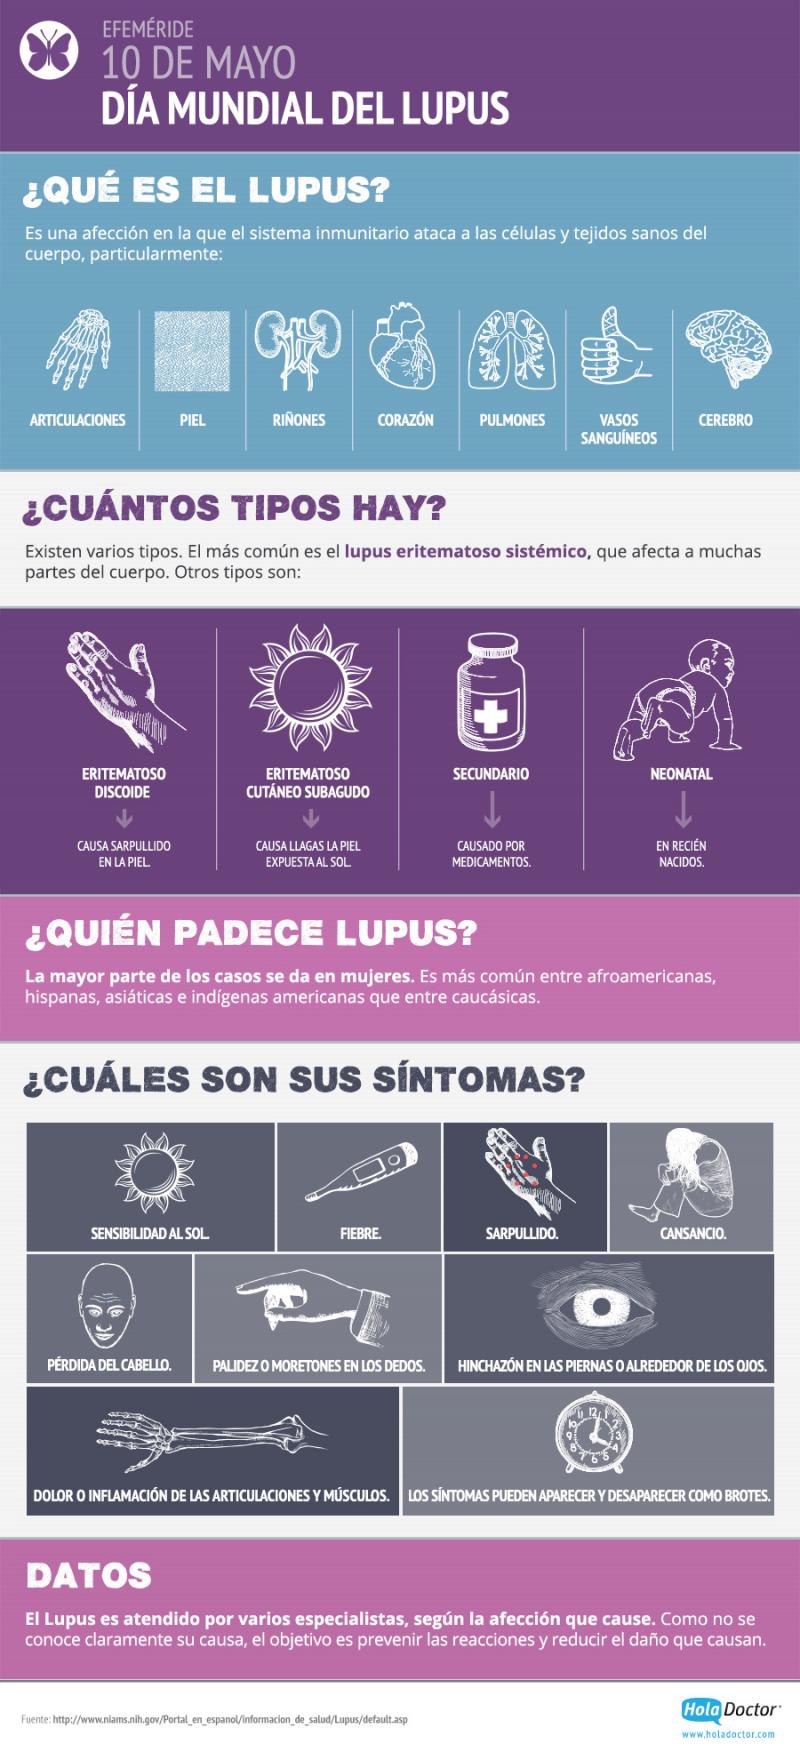 ¿Qué es y qué síntomas tiene el Lupus?